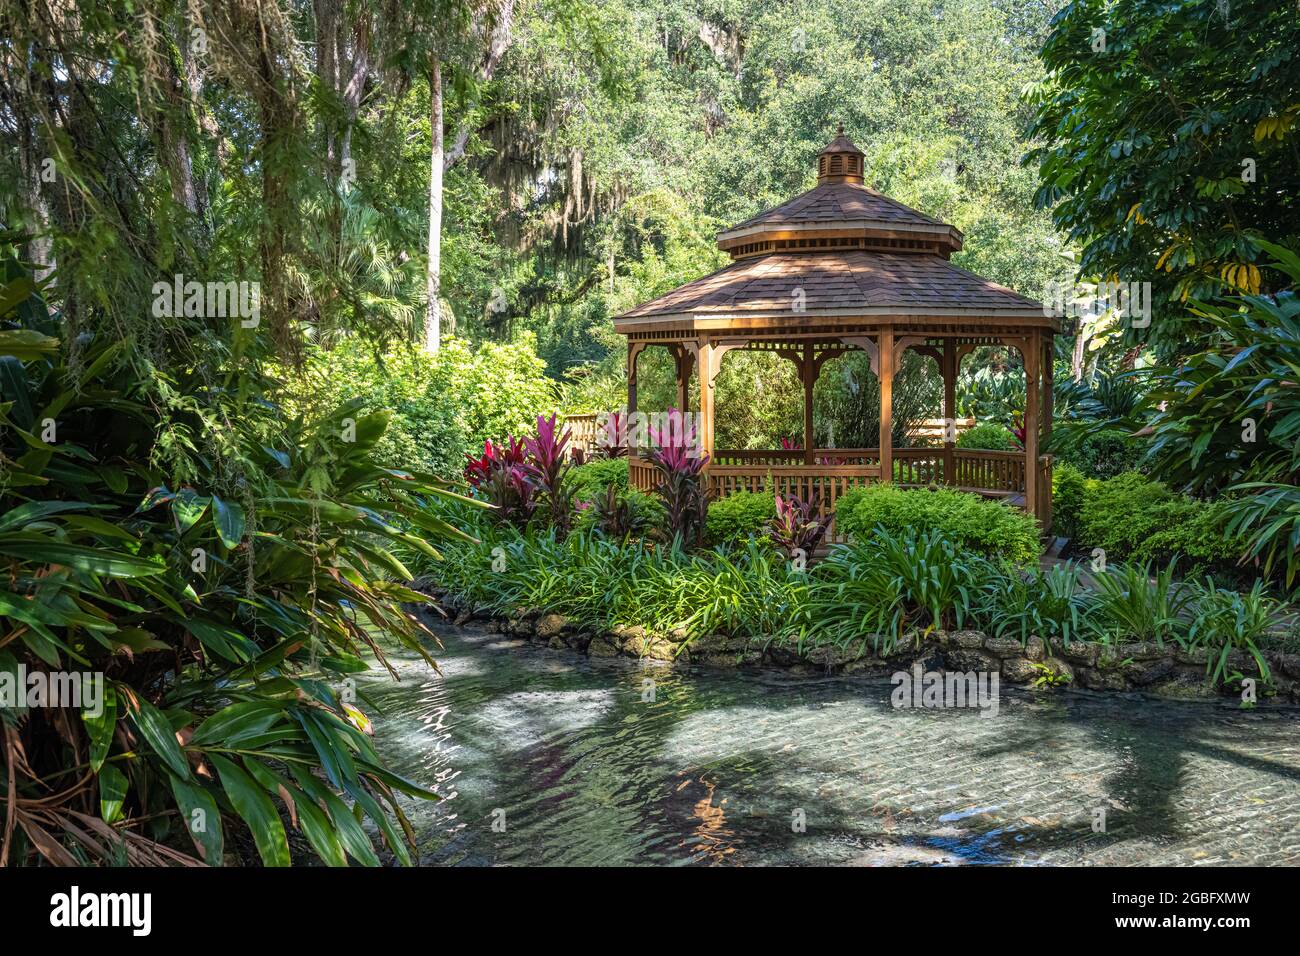 Magnifique belvédère et plan d'eau au parc national Washington Oaks Gardens de Palm Coast, en Floride. (ÉTATS-UNIS) Banque D'Images